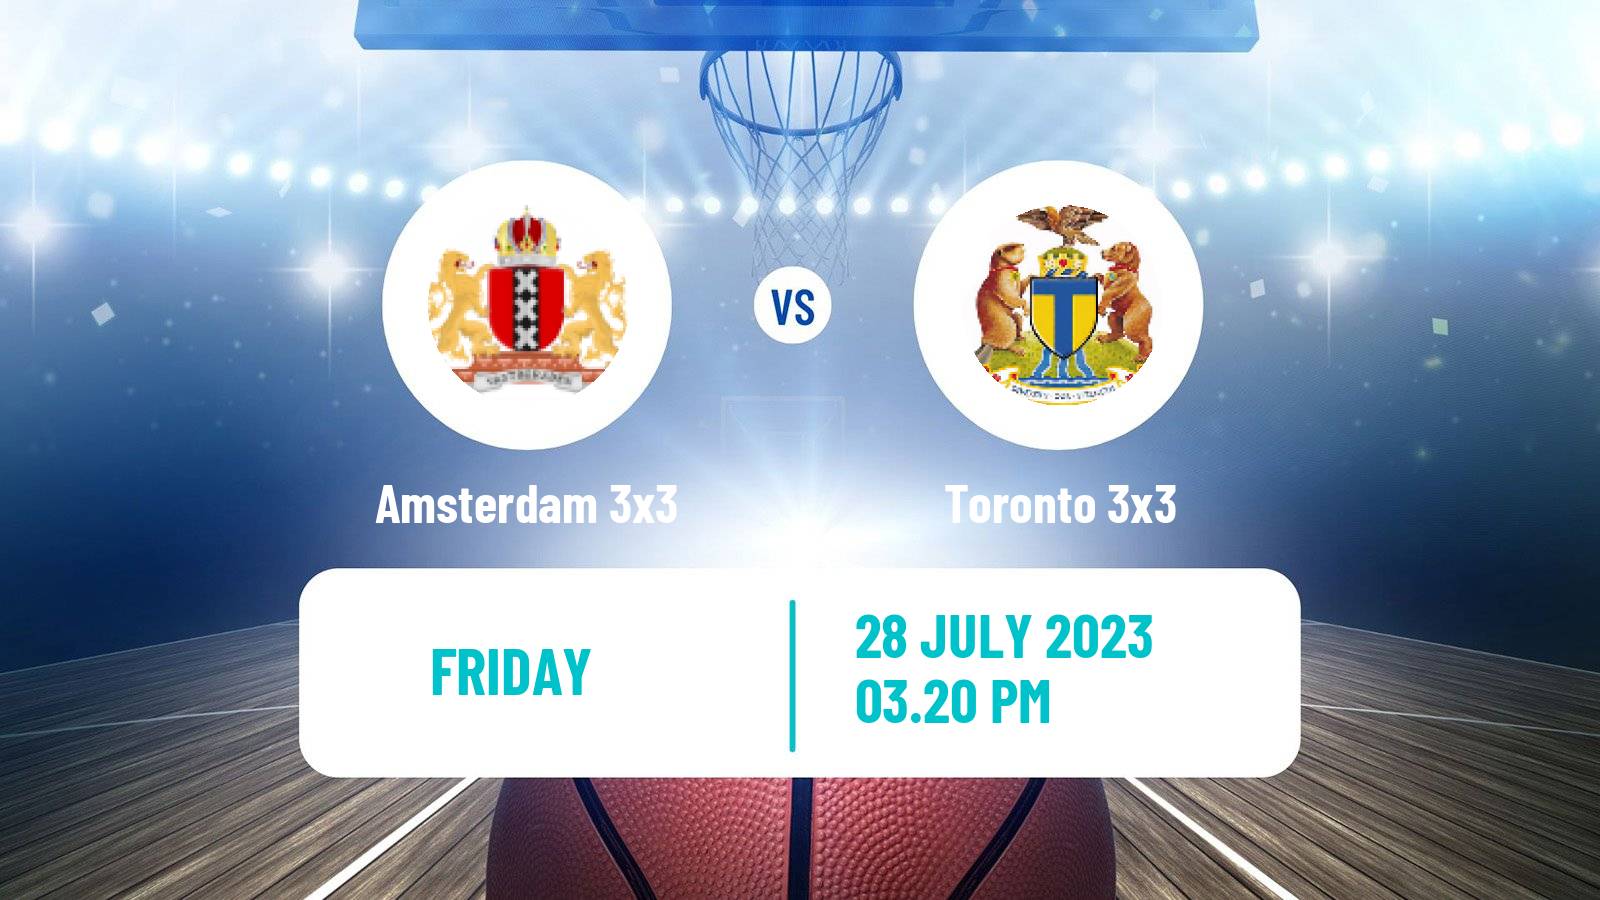 Basketball World Tour Edmonton 3x3 Amsterdam 3x3 - Toronto 3x3